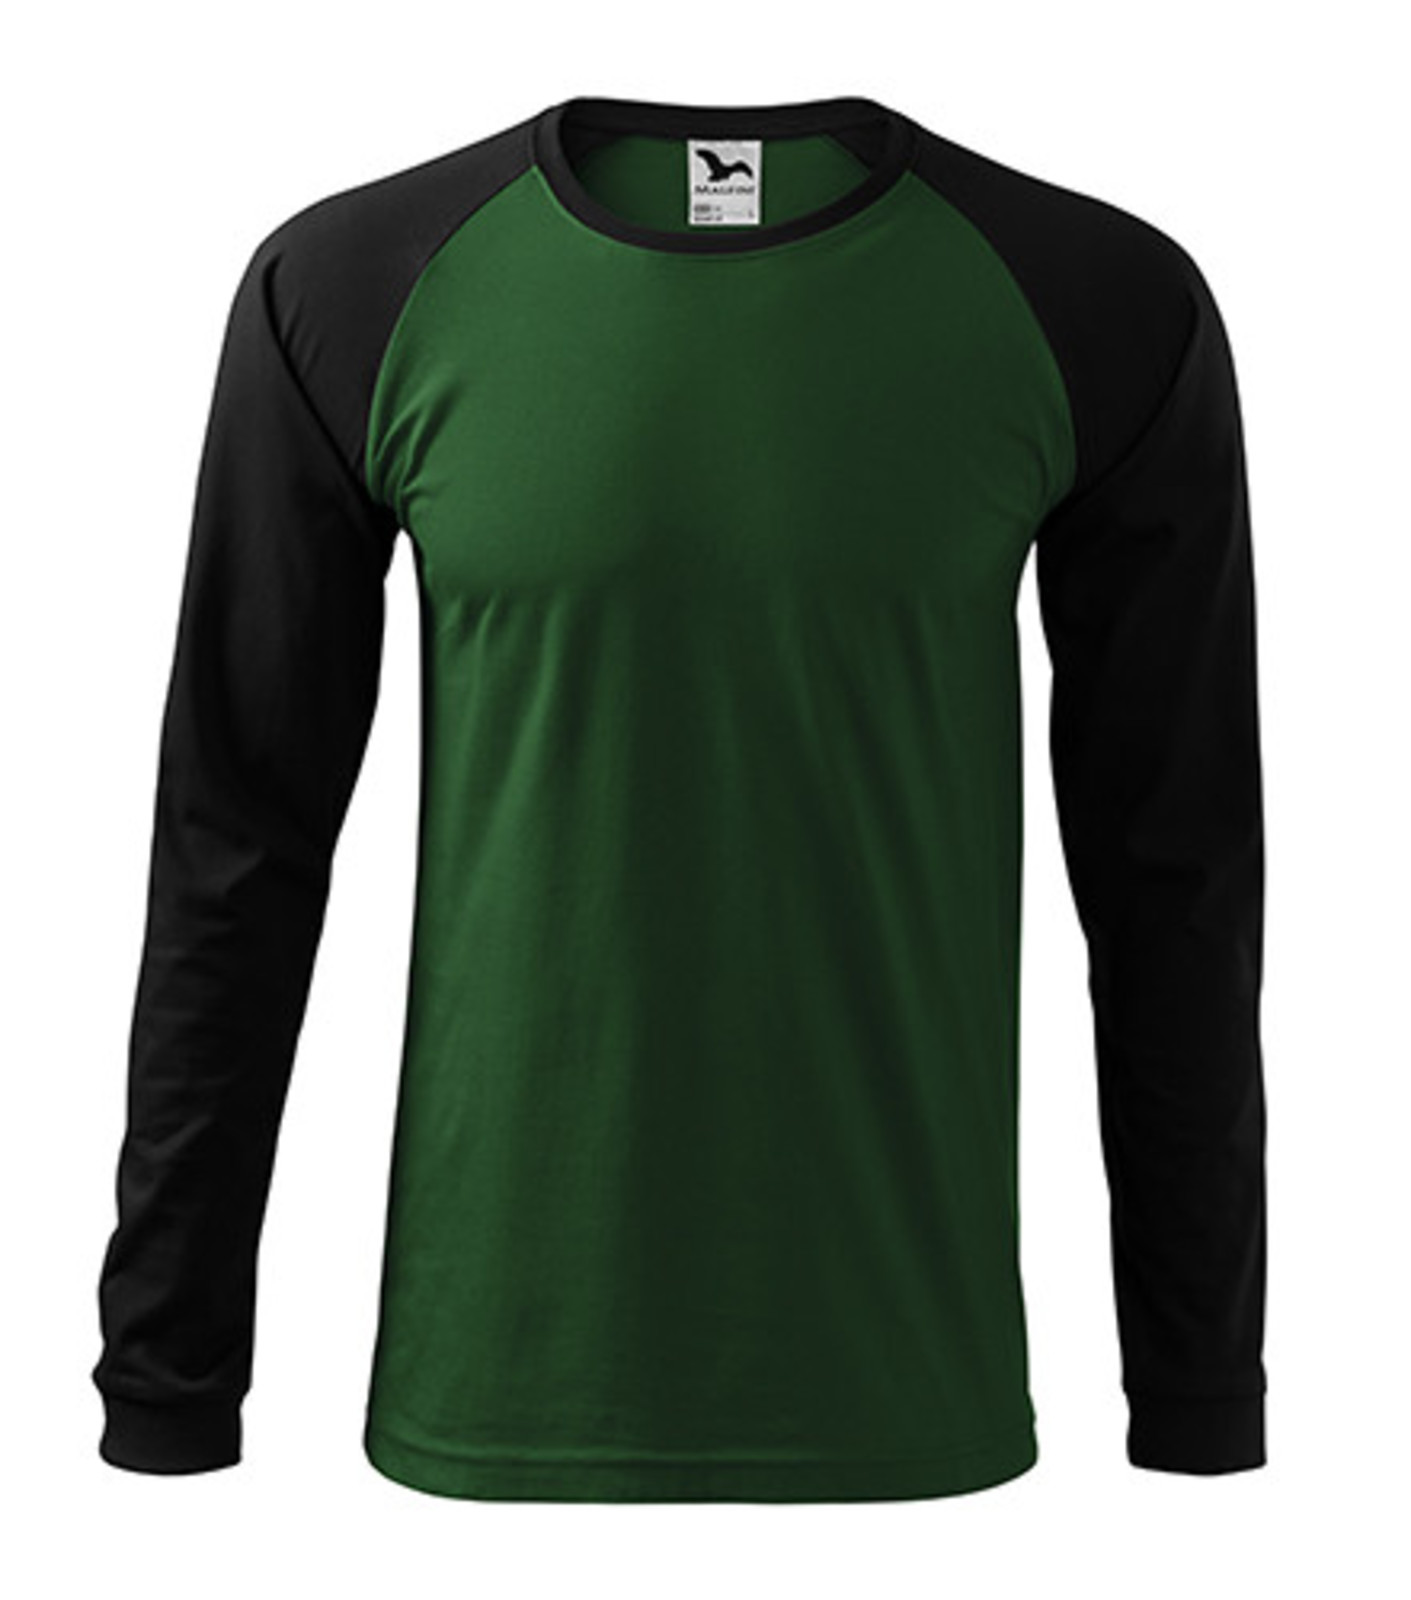 Unisex tričko s dlhým rukávom Rimeck Street LS 130 - veľkosť: XXL, farba: zelená/čierna